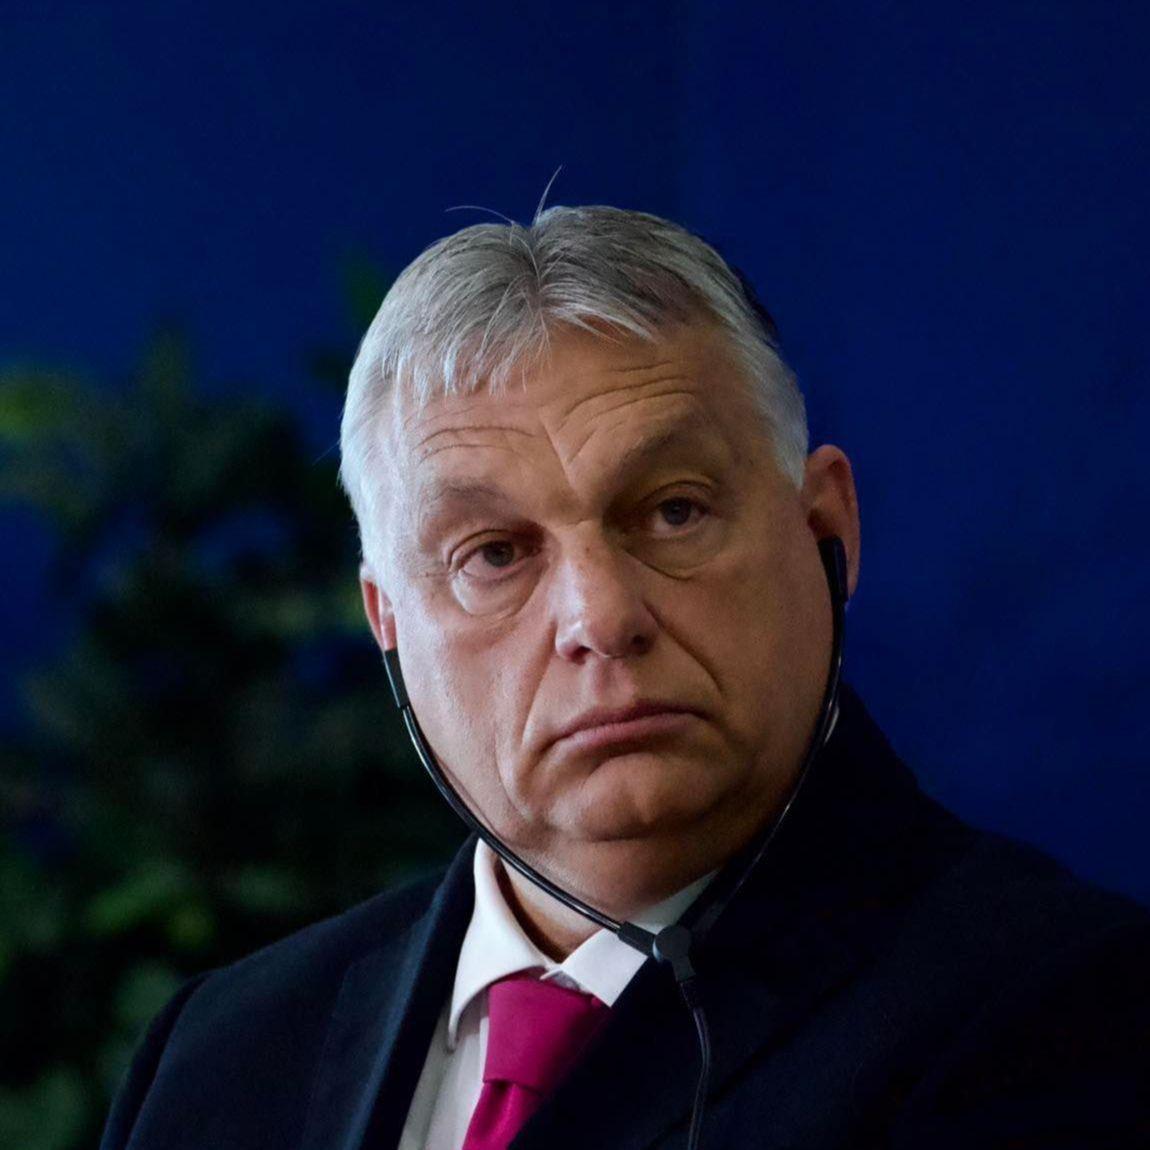 Orbanov Fidesz podnio prijedlog zakona o zaštiti suvereniteta: "Žele se odbraniti od neprimjernog uplitanja stranih grupa"